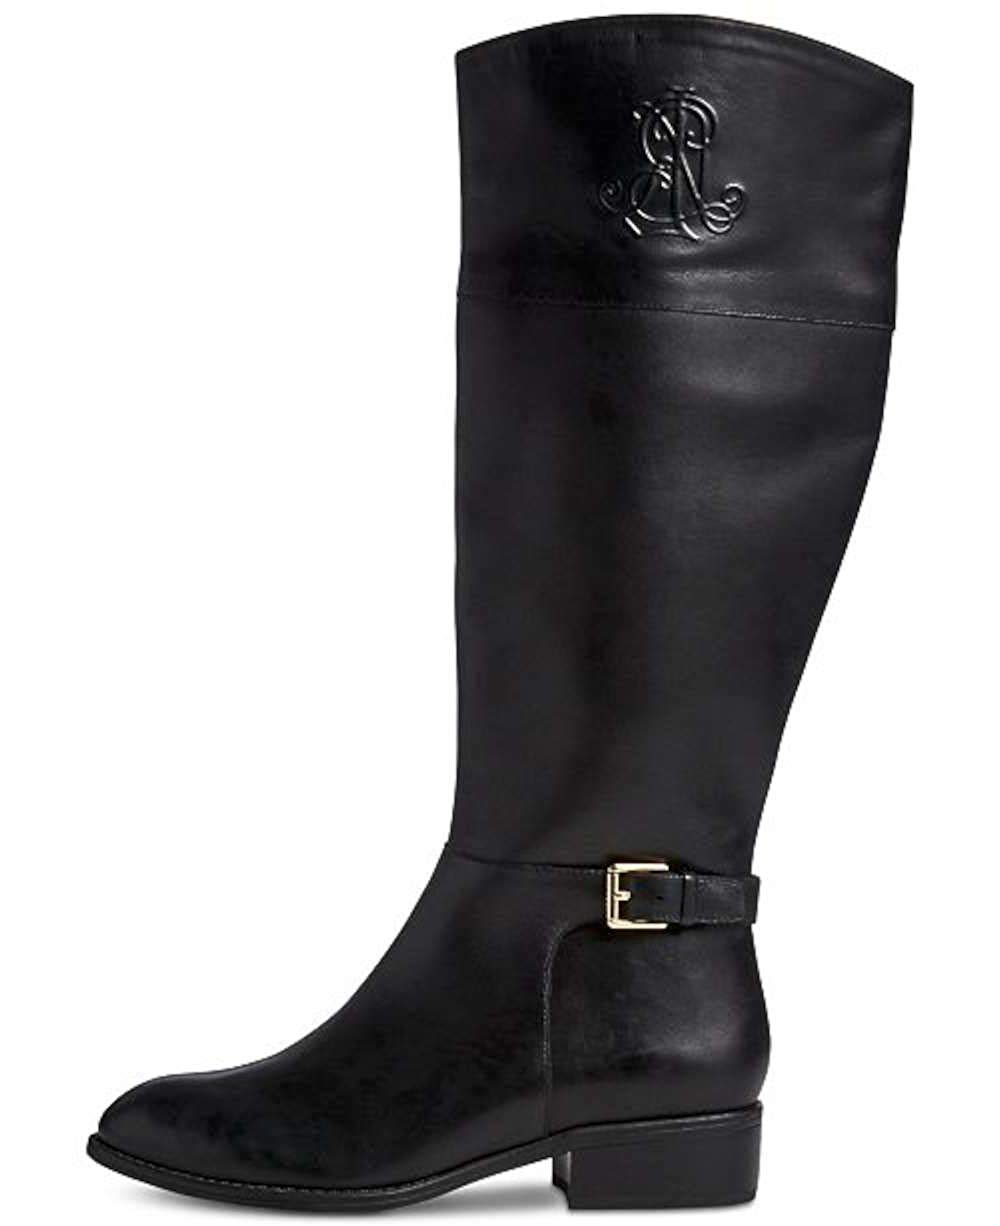 ralph lauren women's leather boots